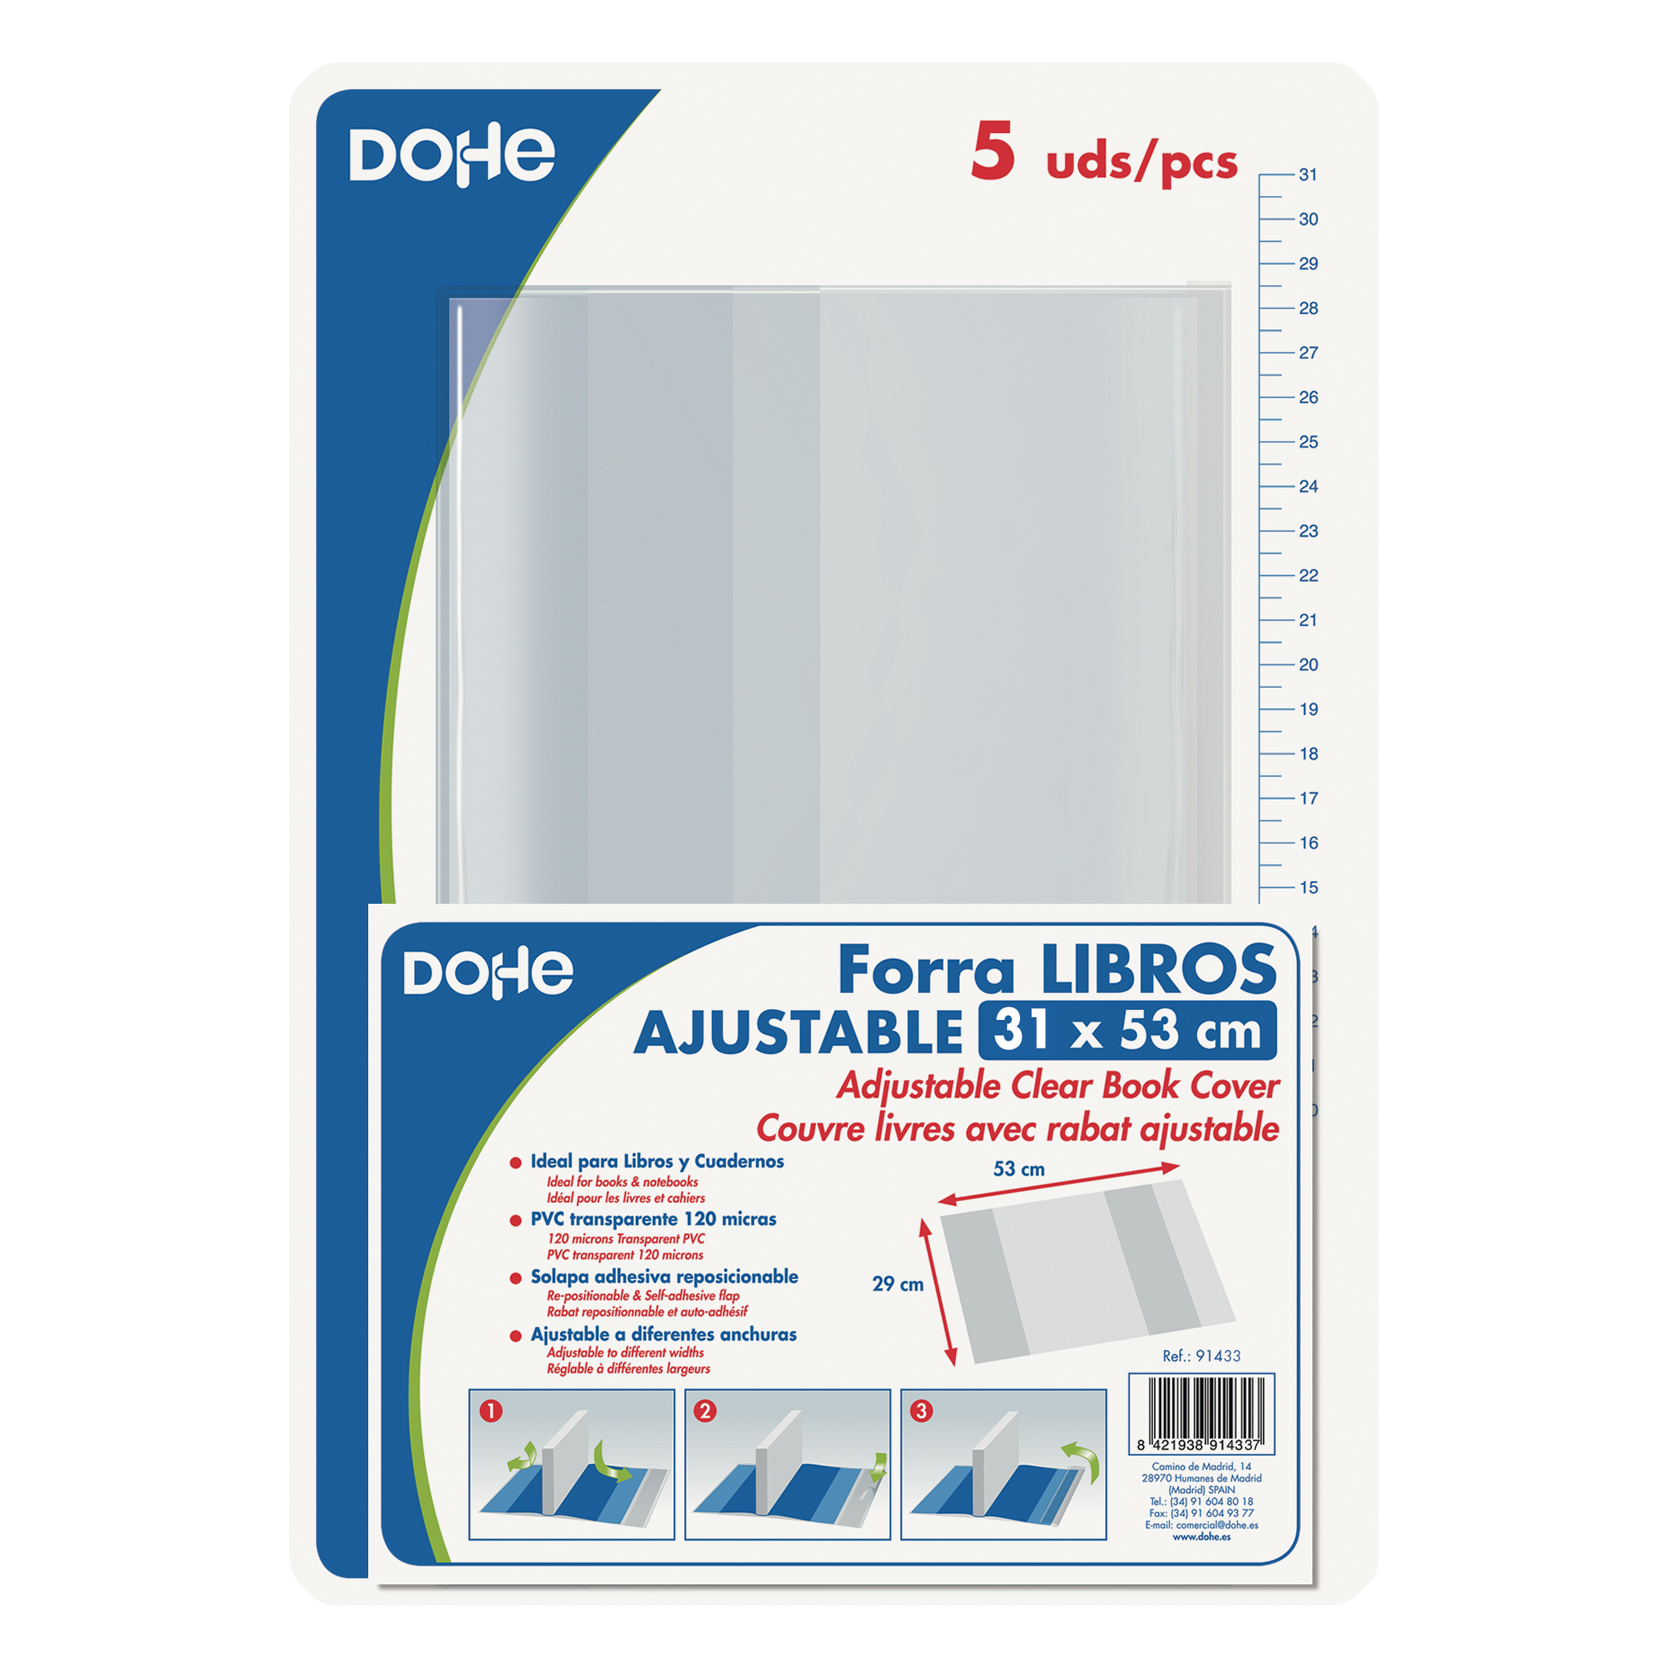 Dohe Lot de 5 Protèges Livres - Rabat Adhésif Repositionnable - Format 31x53cm - Matière PVC 120 microns